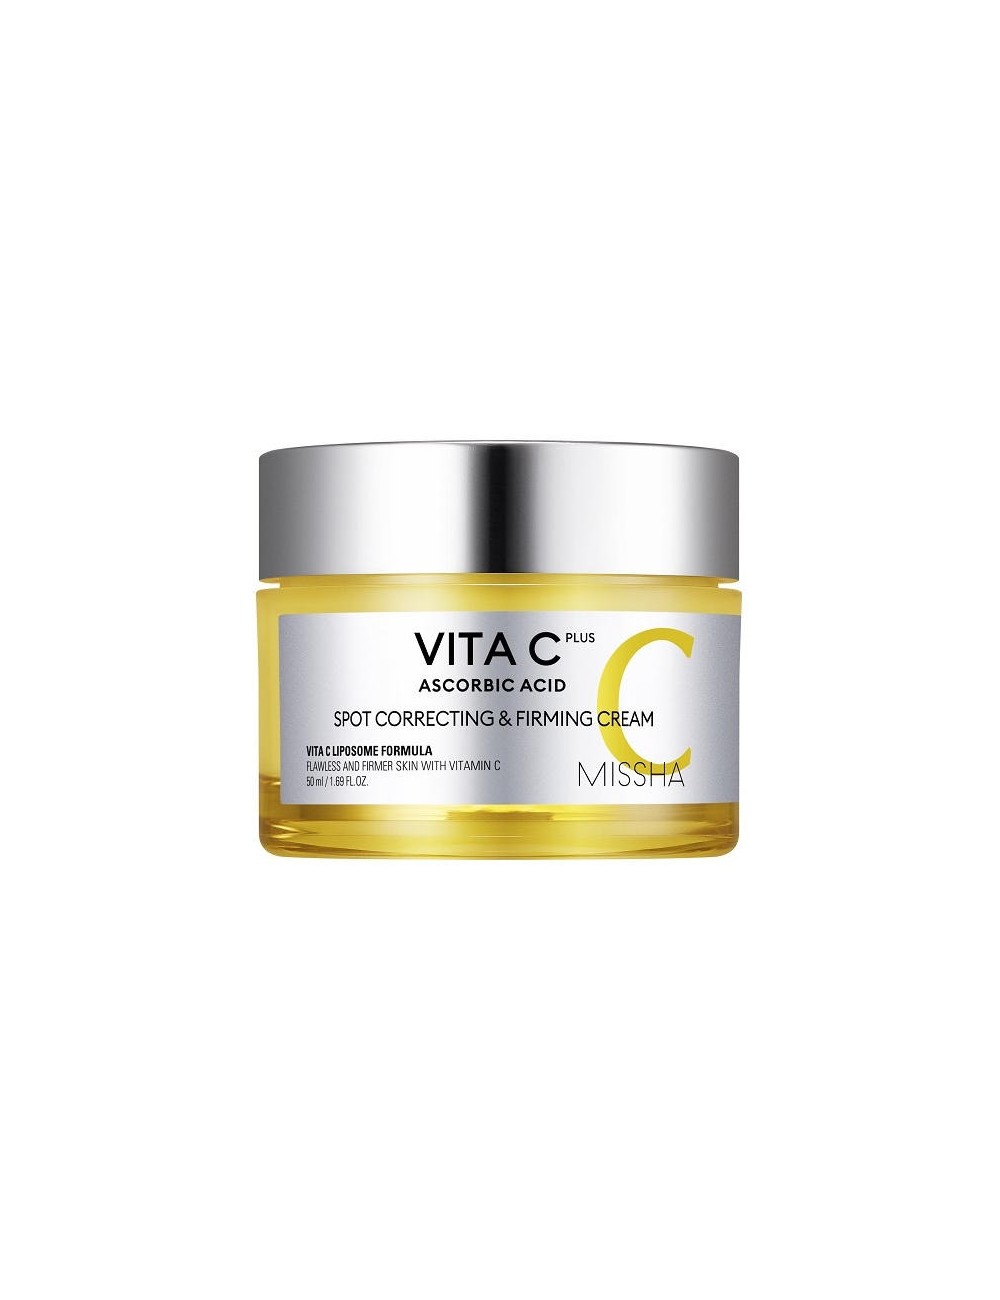 Emulsiones y Cremas al mejor precio: Vita C Plus Spot Correcting & Firming Cream - Anti-manchas, Reafirmante de Missha en Skin Thinks - Piel Seca